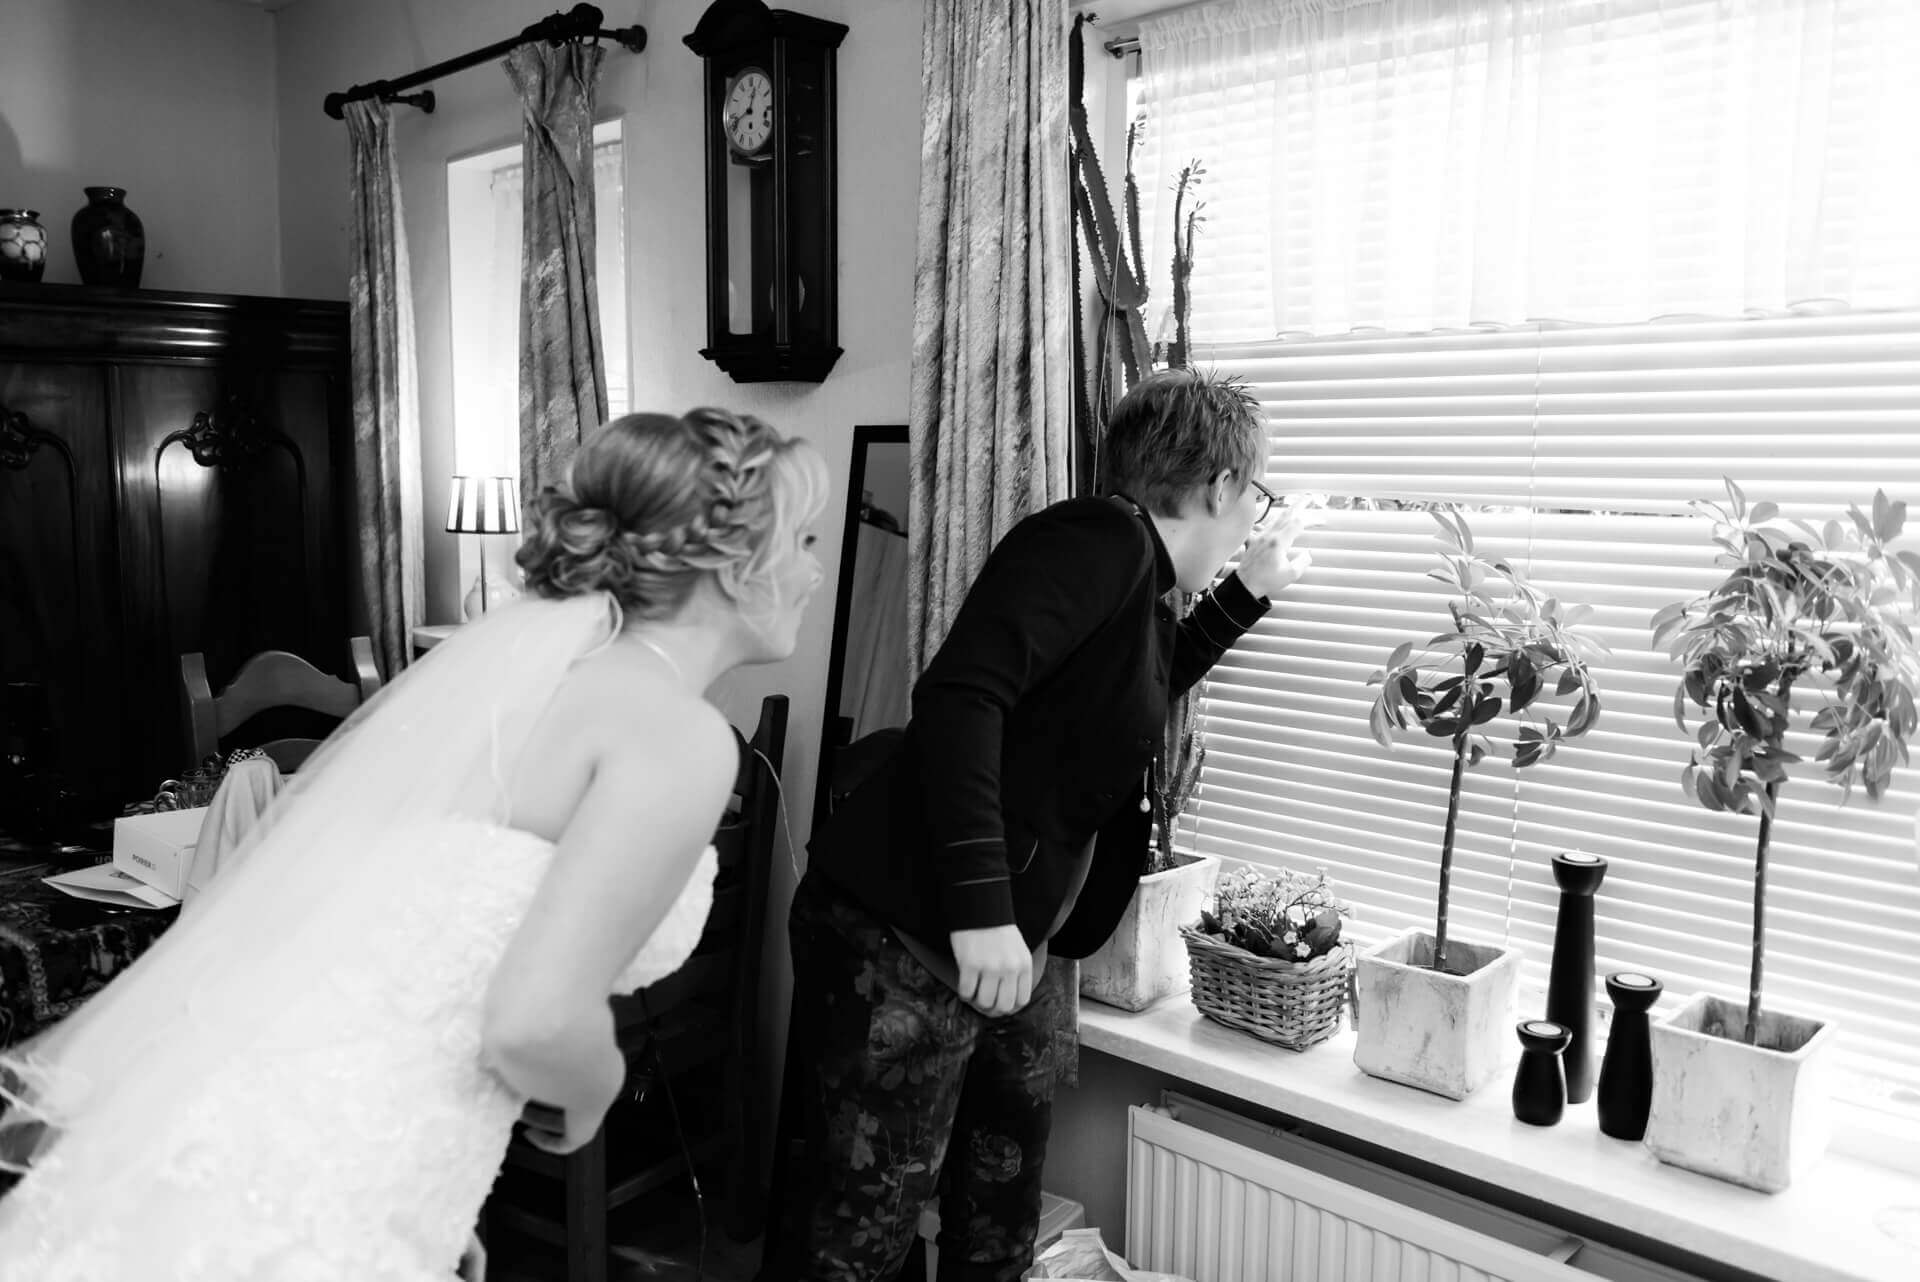 Bruiloft Hofstede De Middelburg Voorst Bussloo met bruidsfotografie door trouwfotograaf Grietje Mesman uit Deventer